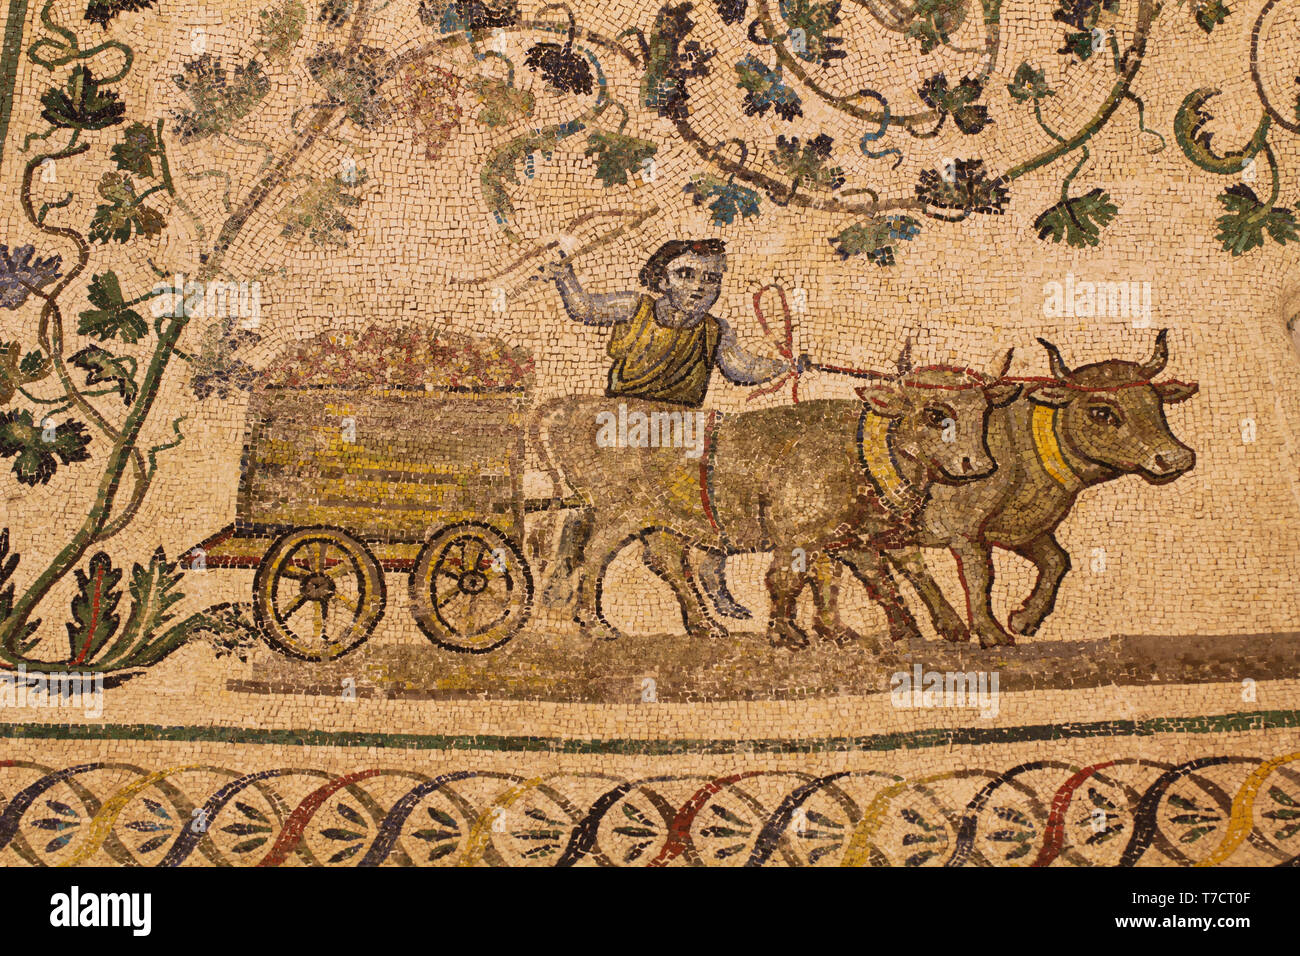 Weinbereitung - Die römischen Prozess zur Herstellung von Wein - Detail der ambulanten Mosaiken im Mausoleum von Santa Costanza (frühe christliche kunst - 4 c AD) Stockfoto